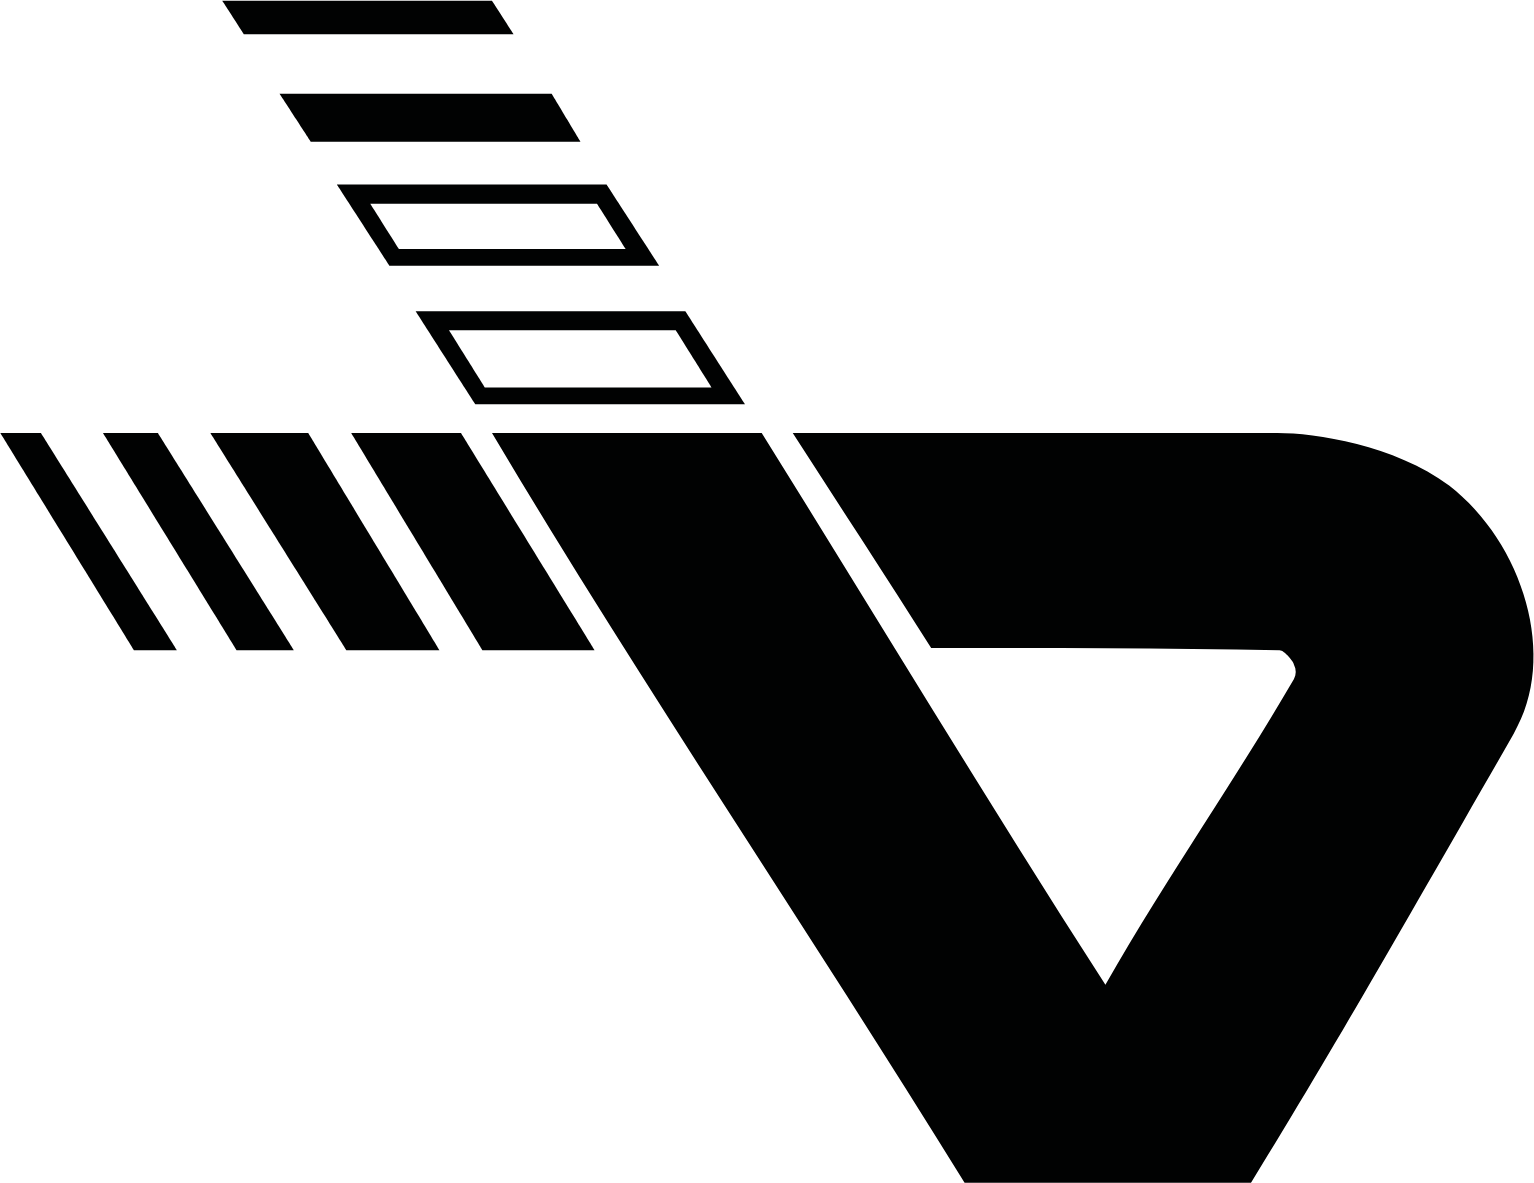 Vienna Airport logo (PNG transparent)